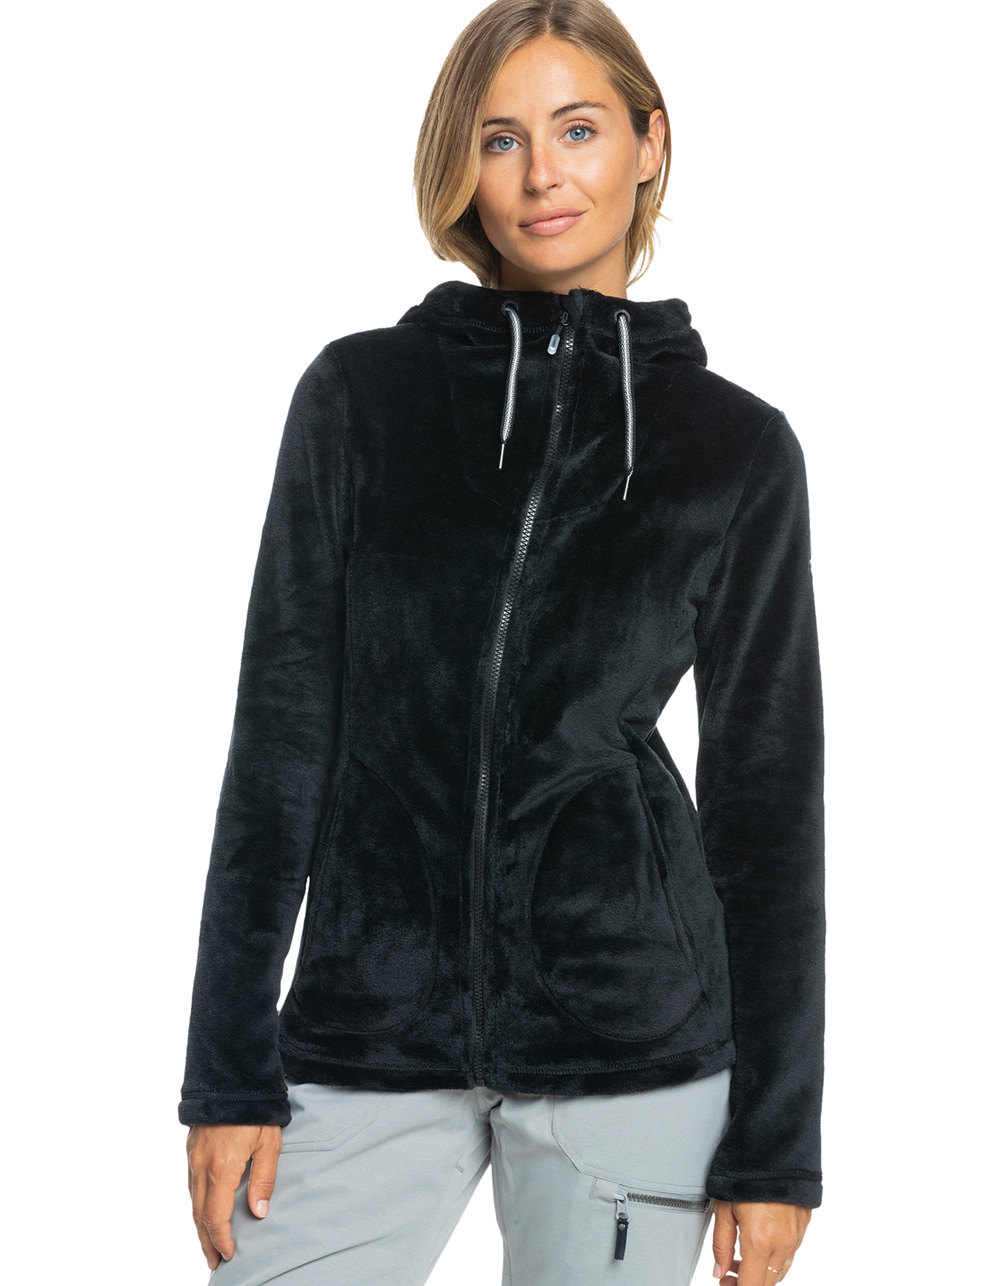 ROXY Tundra Womens Fleece Jacket - BLACK